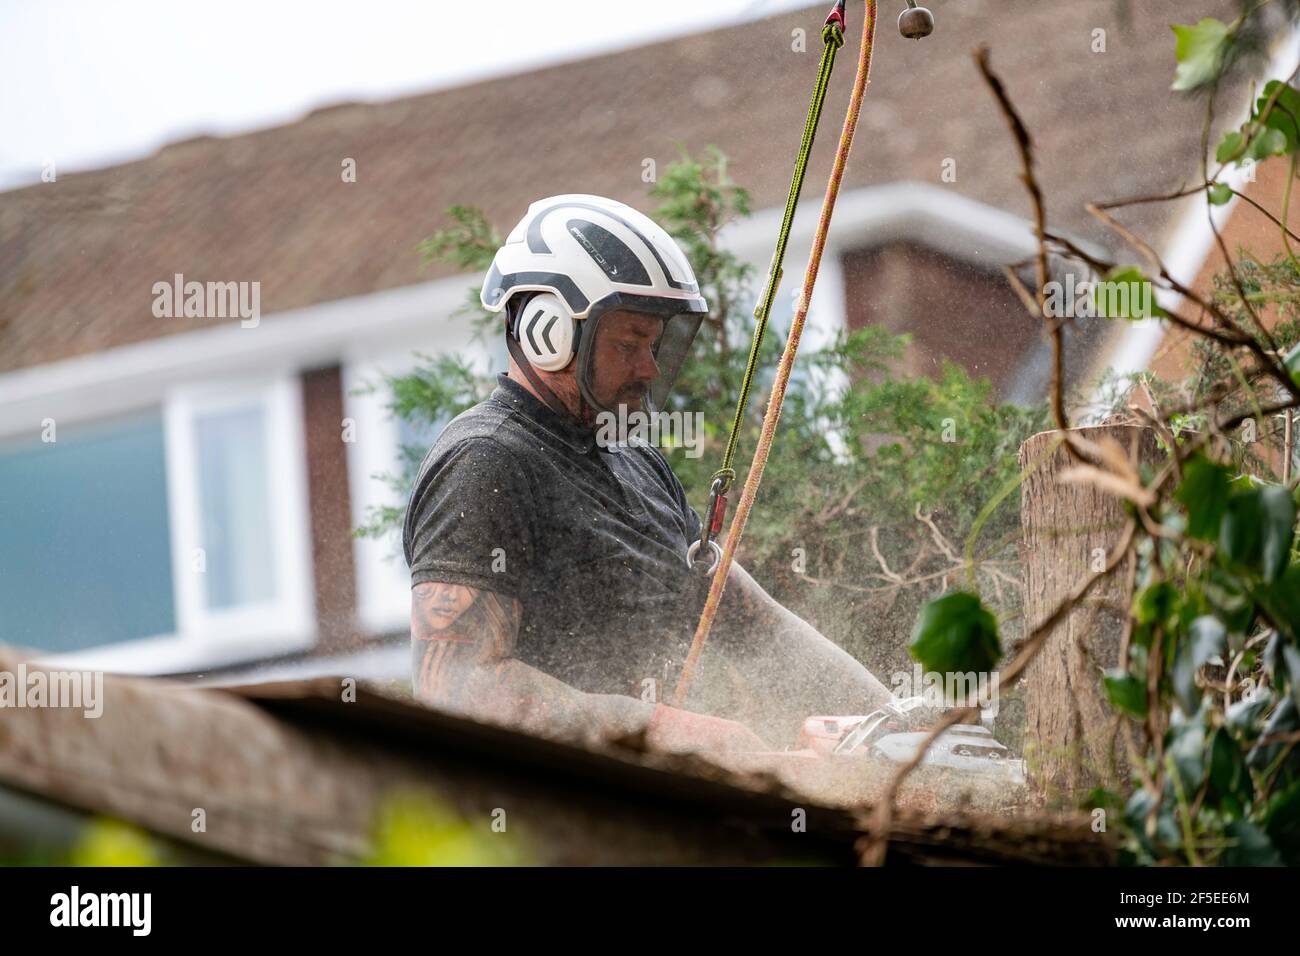 Baumchirurg bei der Arbeit Schneiden und Trimmen von Bäumen in einem städtischen Garten. Stockfoto